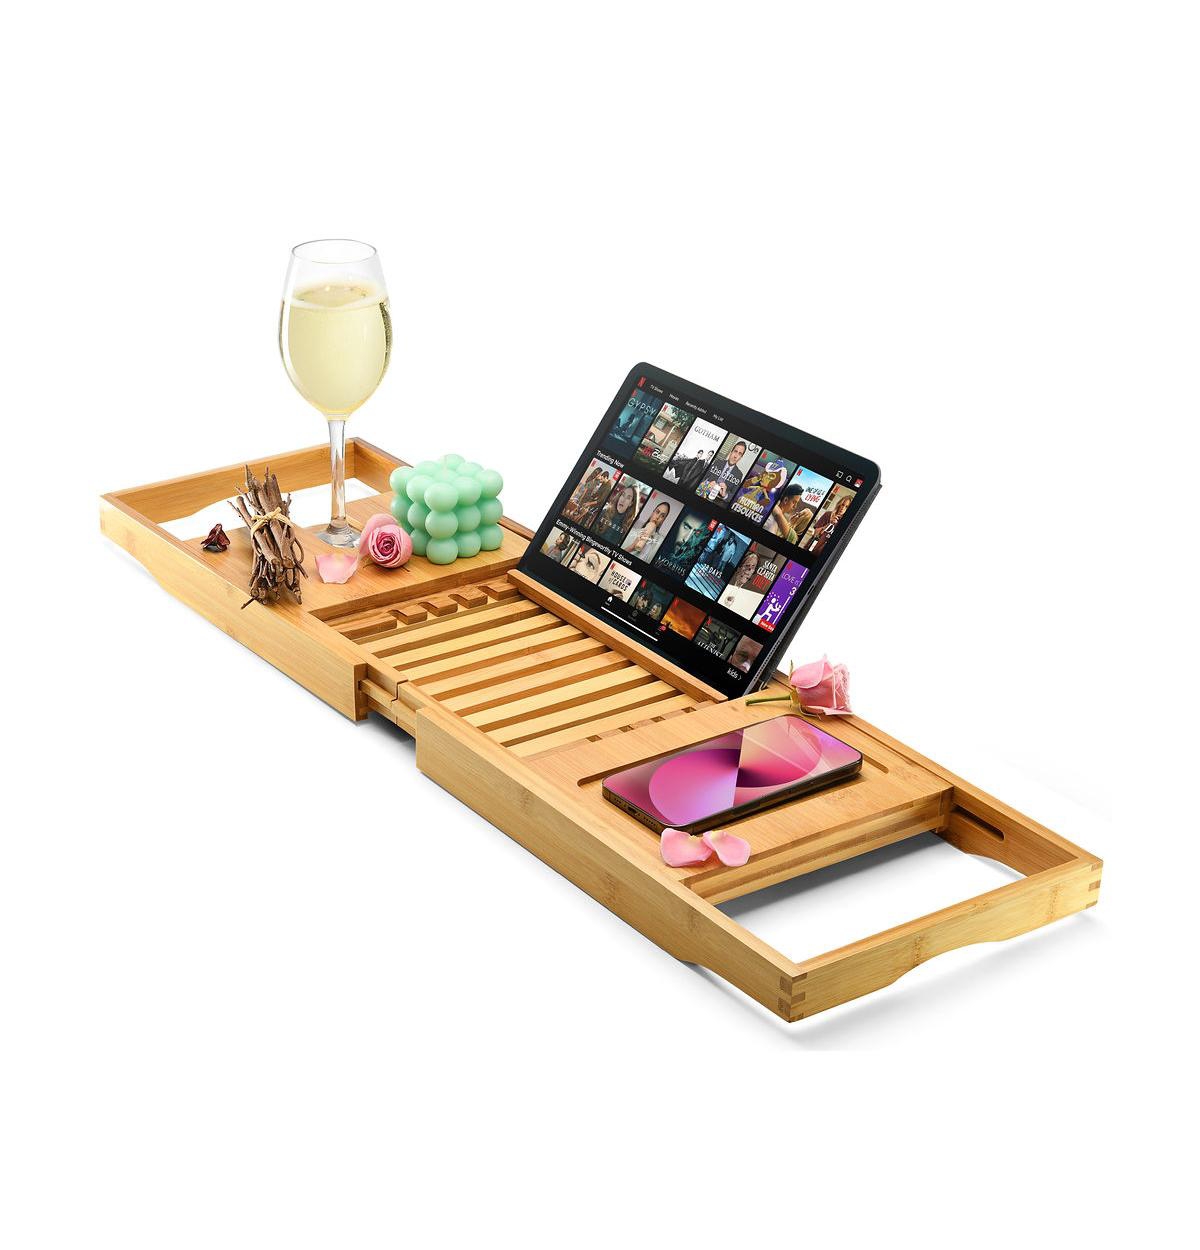 Wooden Bamboo Bathtub Tray Caddy - Foldable Waterproof Bath Tray & Bath Caddy - Beige/khaki